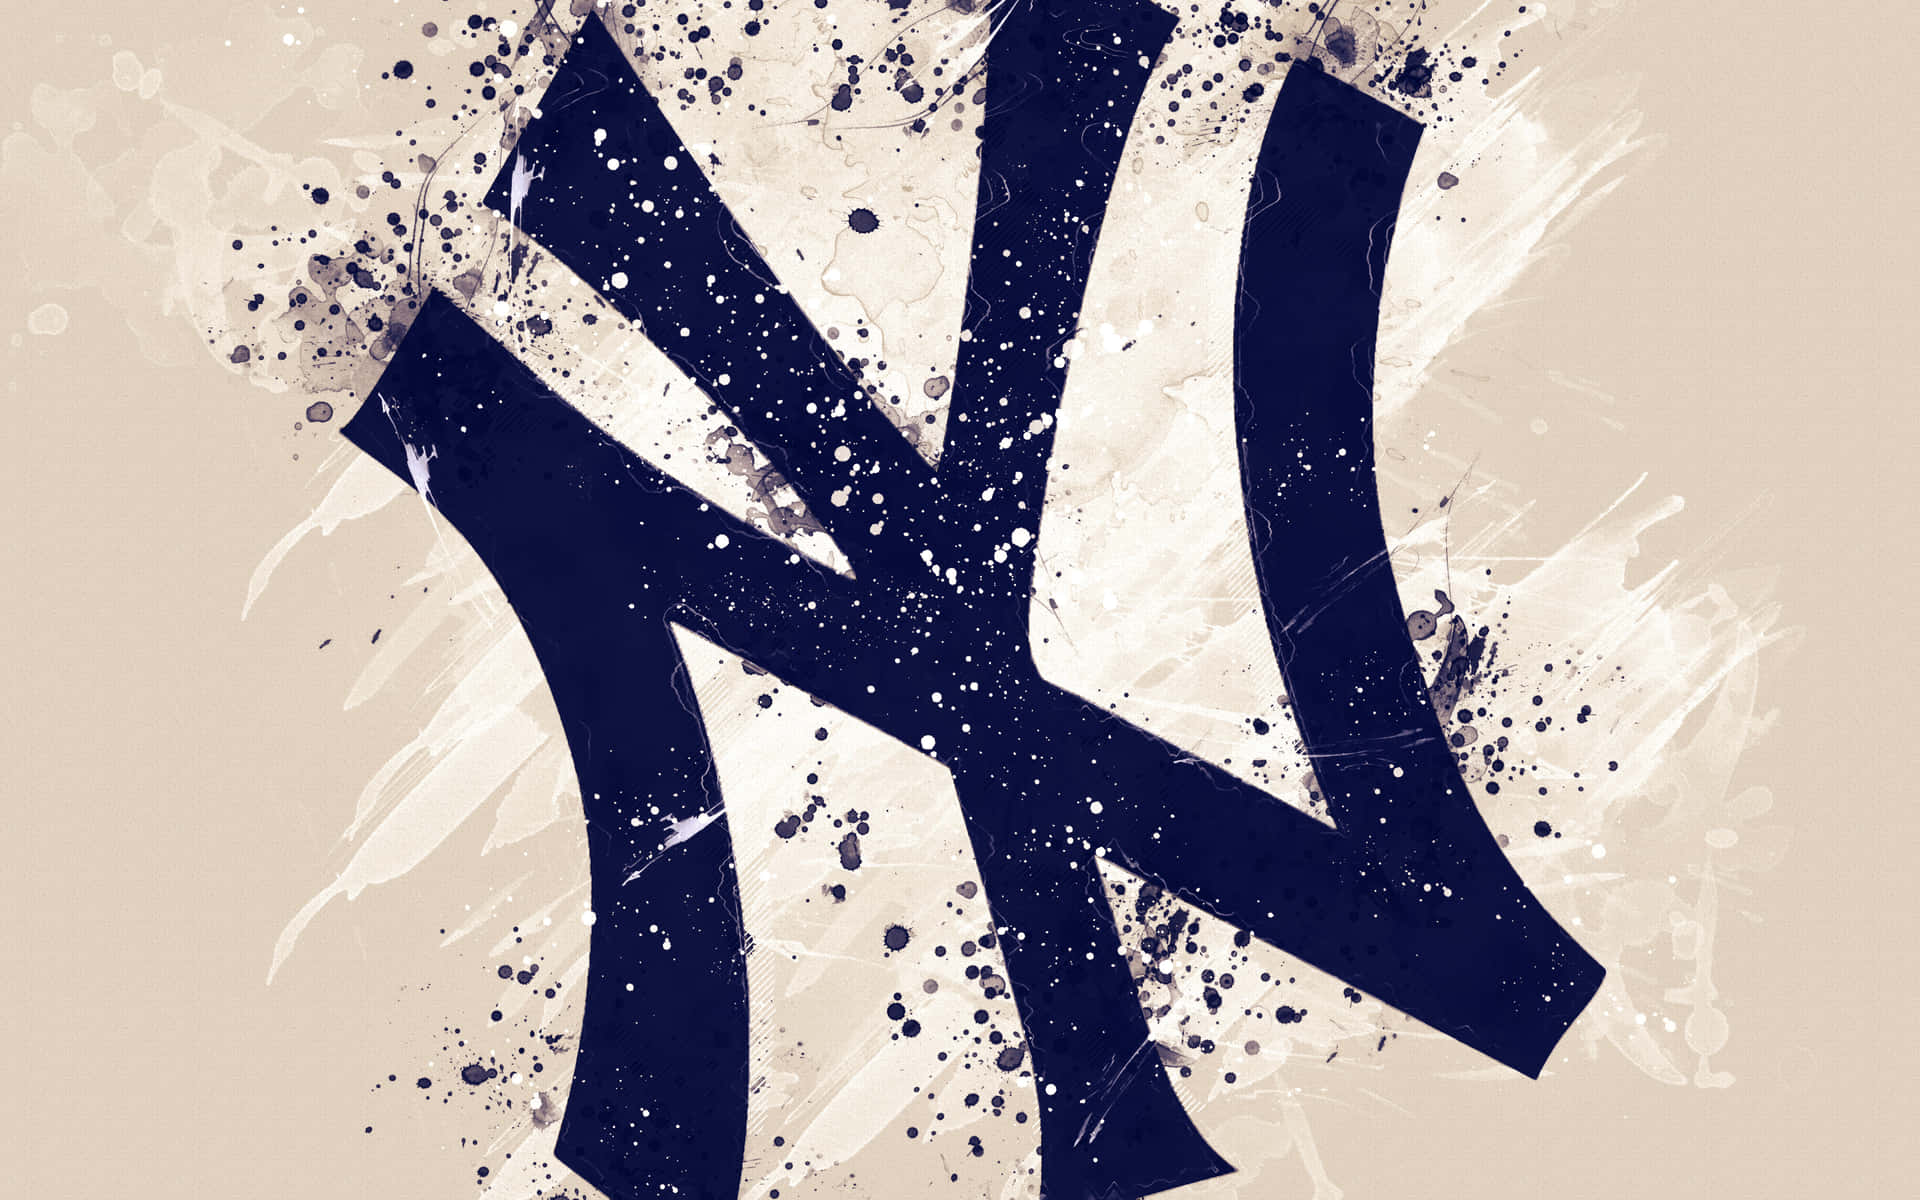 Spüredie Energie Der New York Yankees In Diesem Lebendigen Hd-bild! Wallpaper